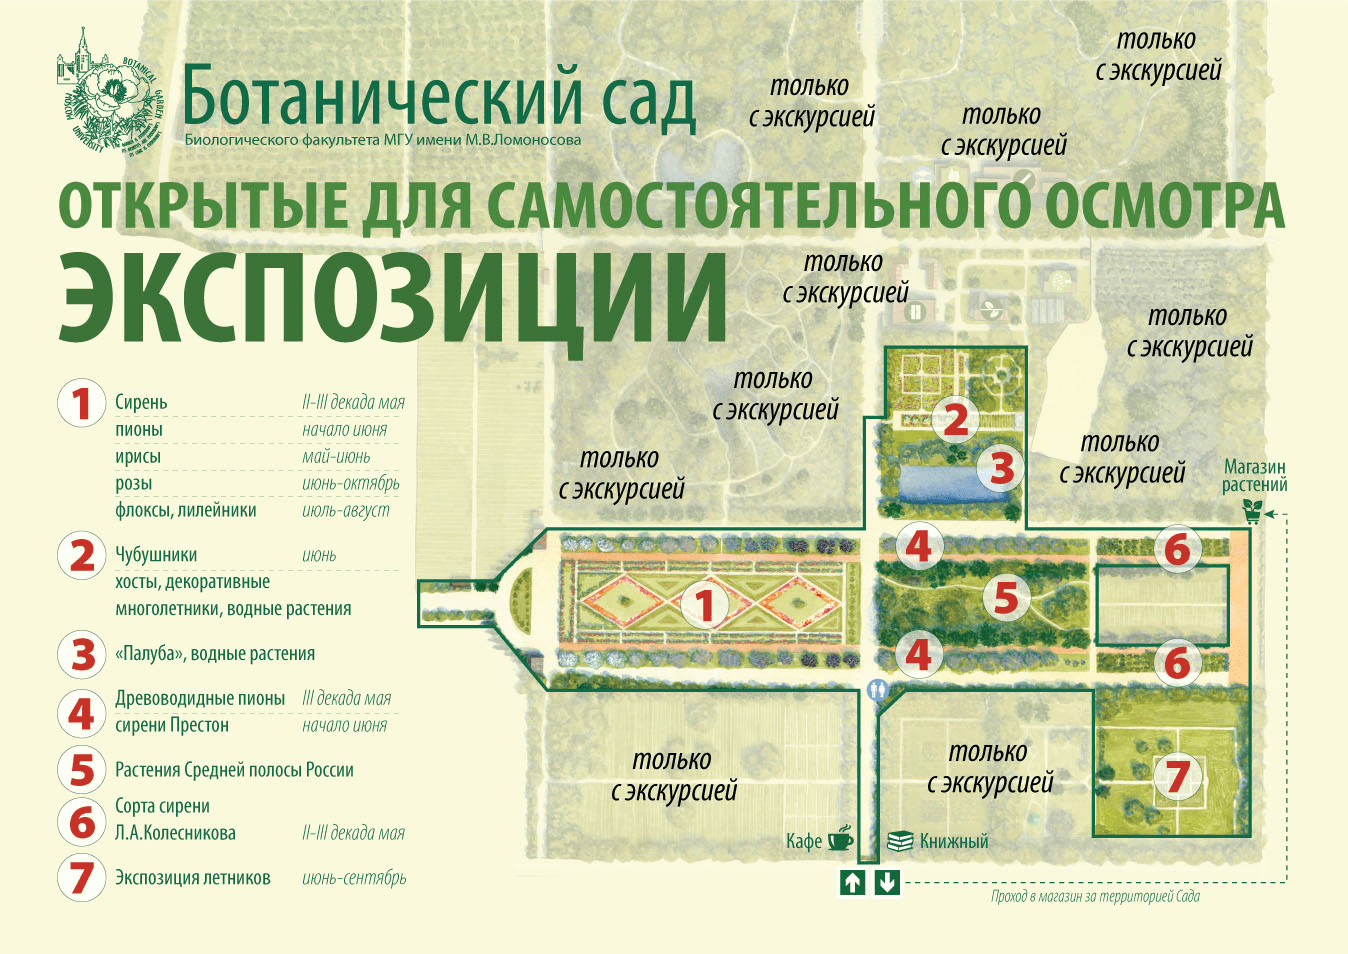 Схема ботанического сада МГУ на Воробьевых горах